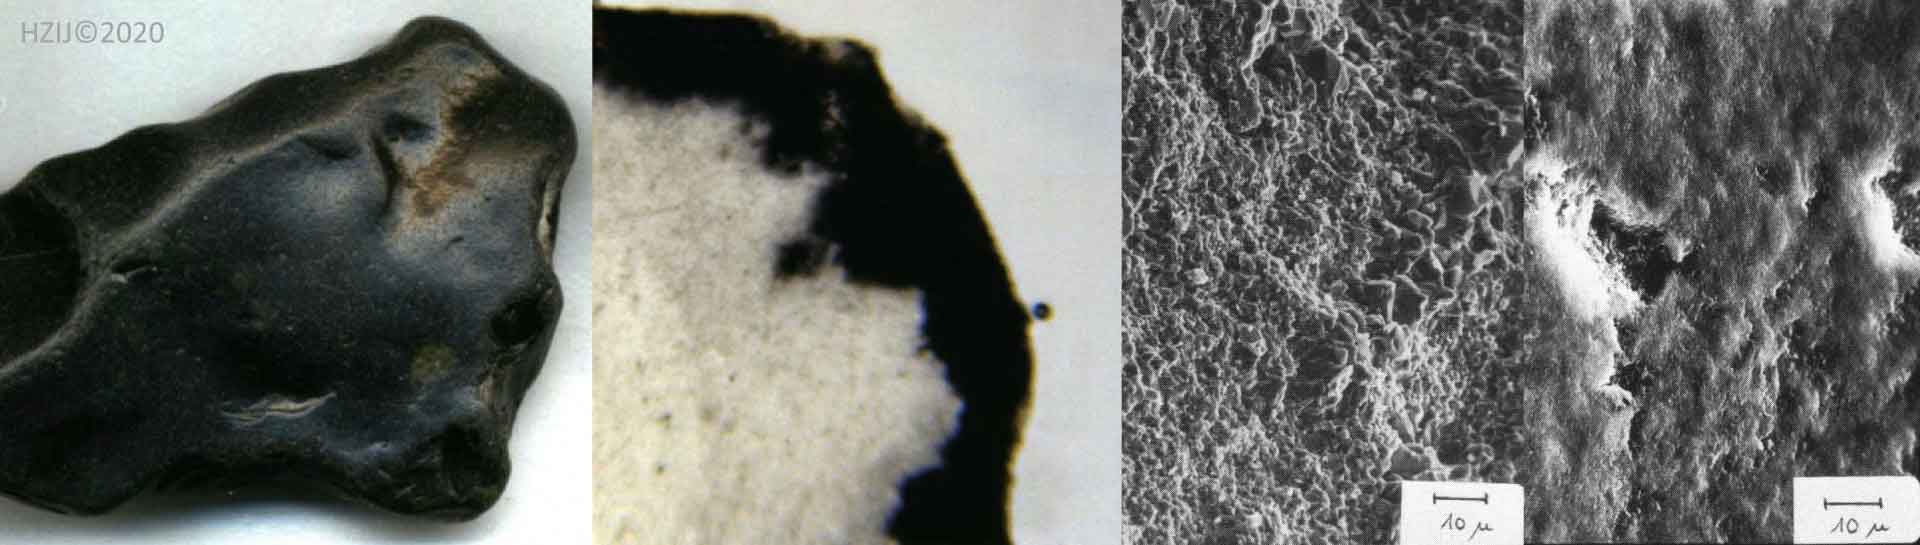 Patina van zwarte vuursteen uit zee, met slijpplaatje en elektronenmicroscoop foto's van oppervlak bruine vuursteen en vuursteen met glans patina